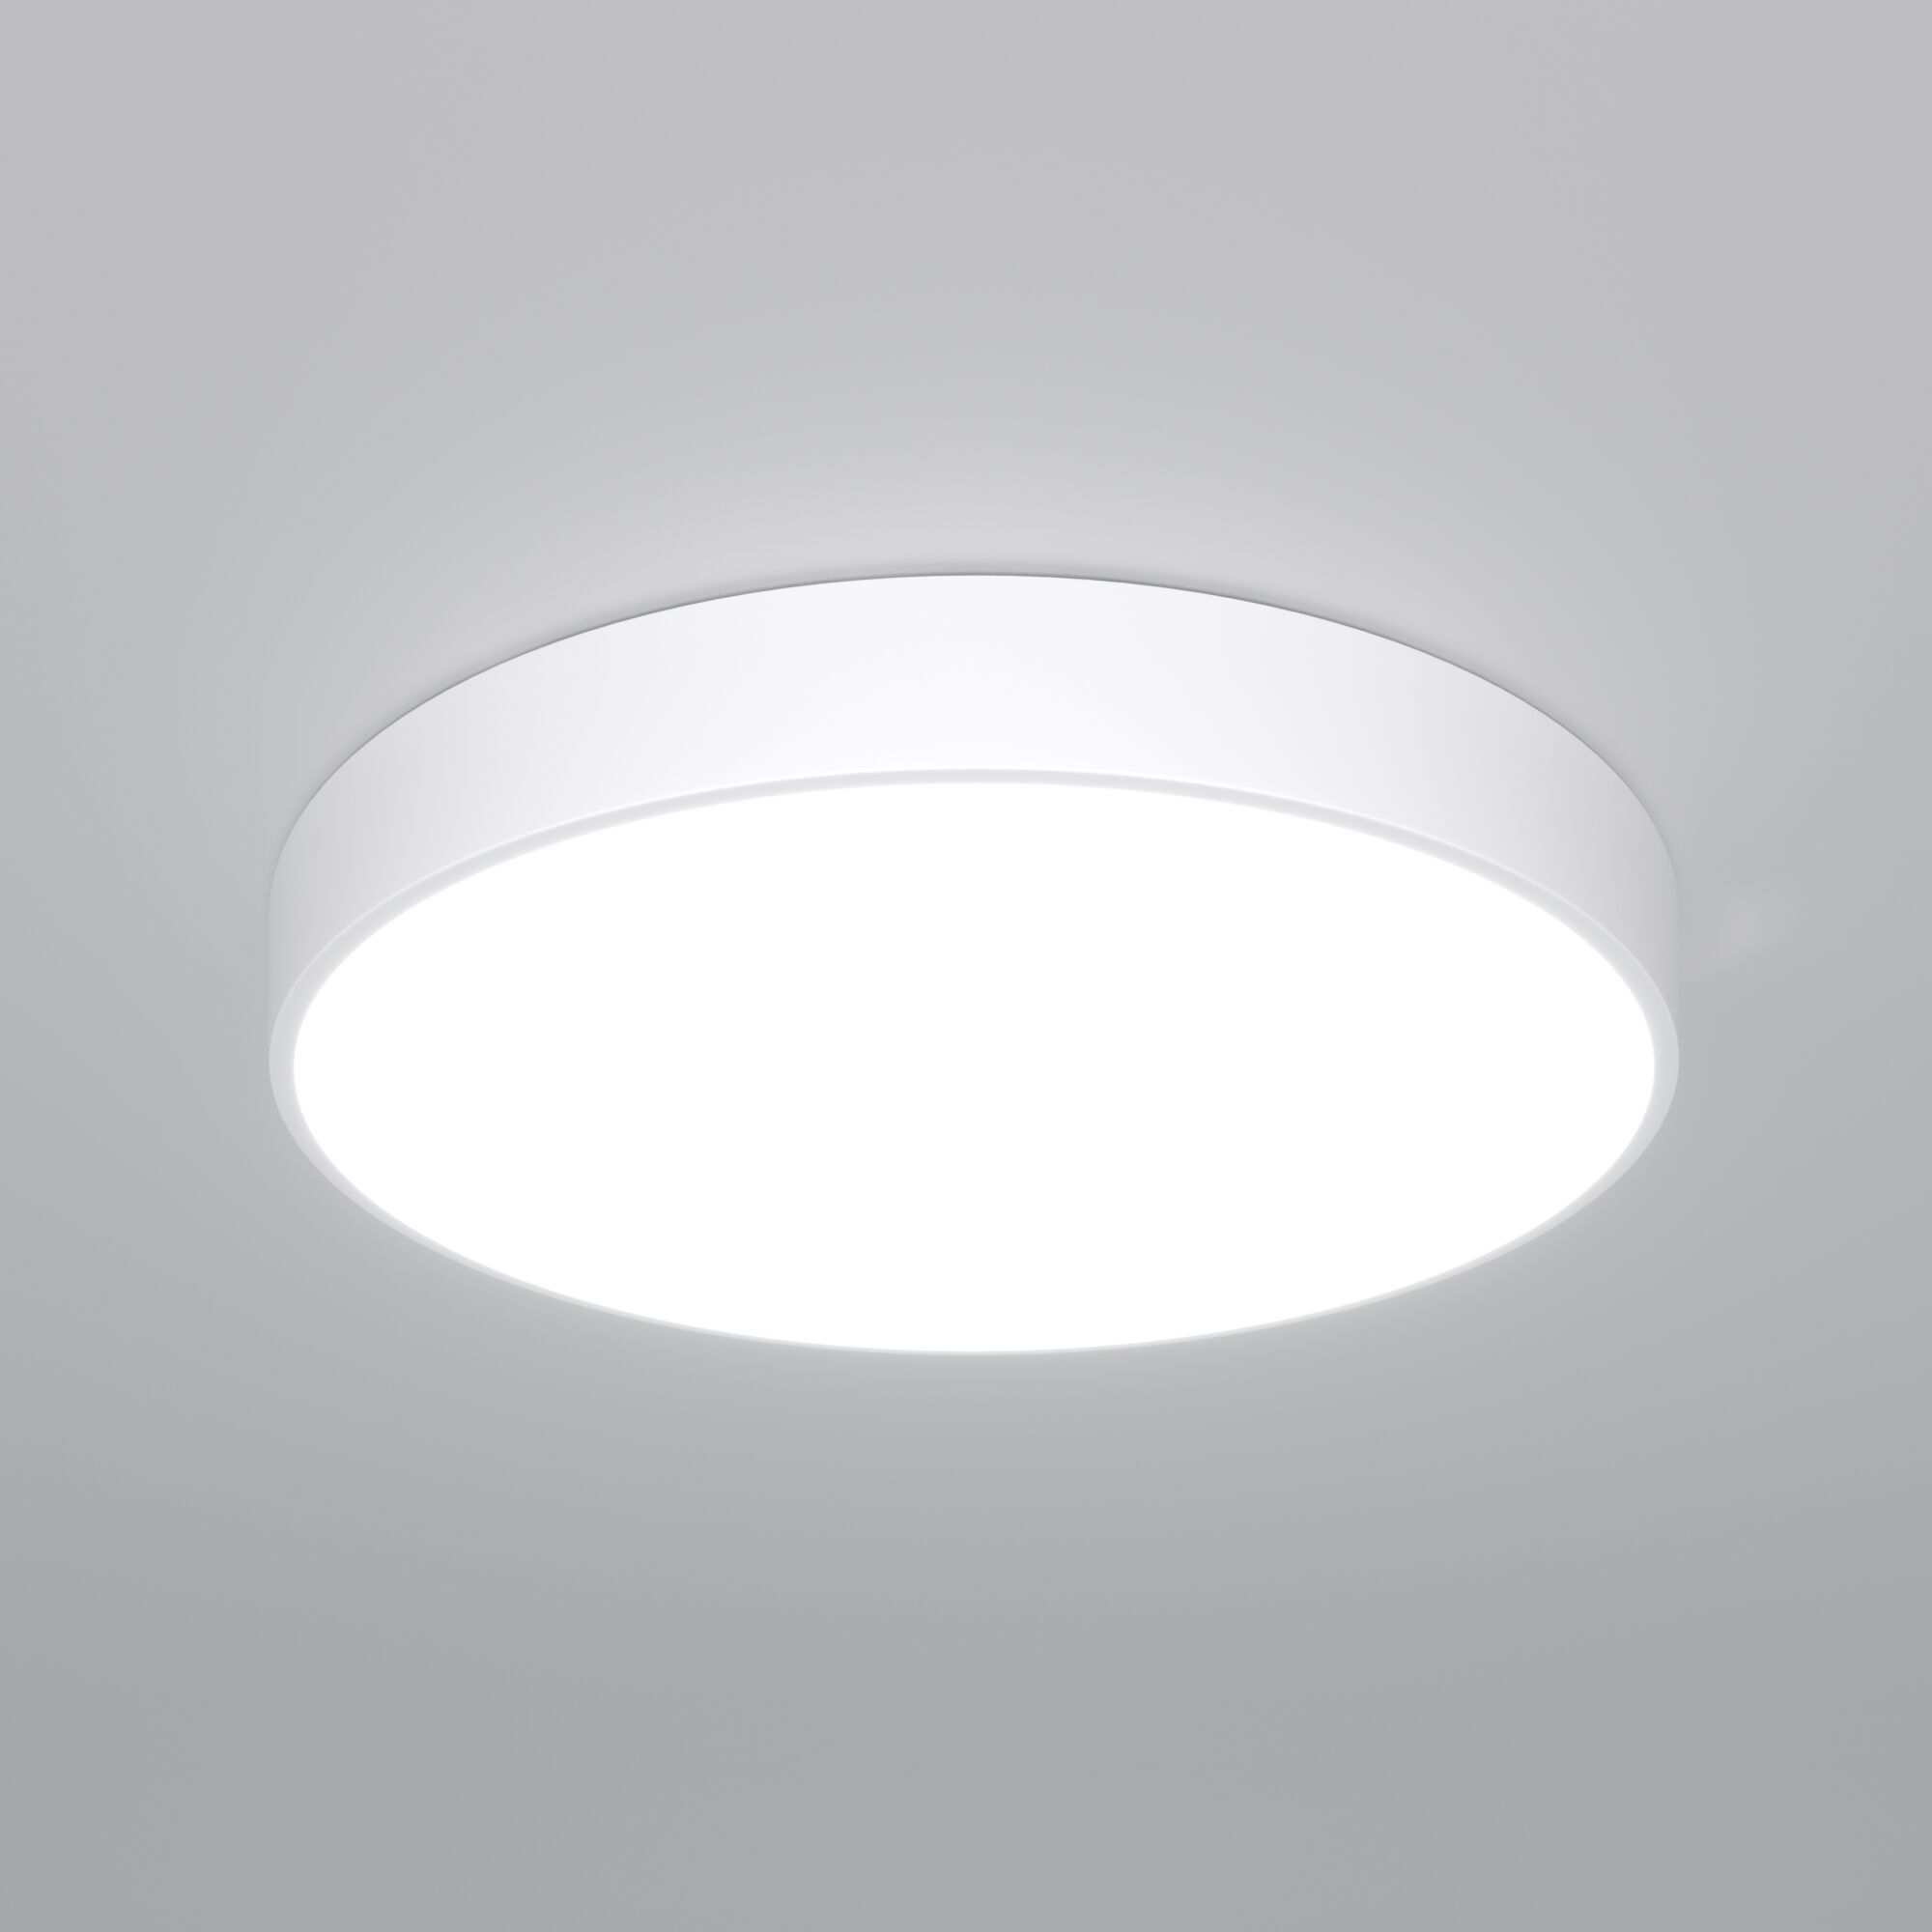 Потолочный светодиодный светильник с регулировкой яркости и цветовой температуры Eurosvet Entire 90320/1 белый. Фото 1